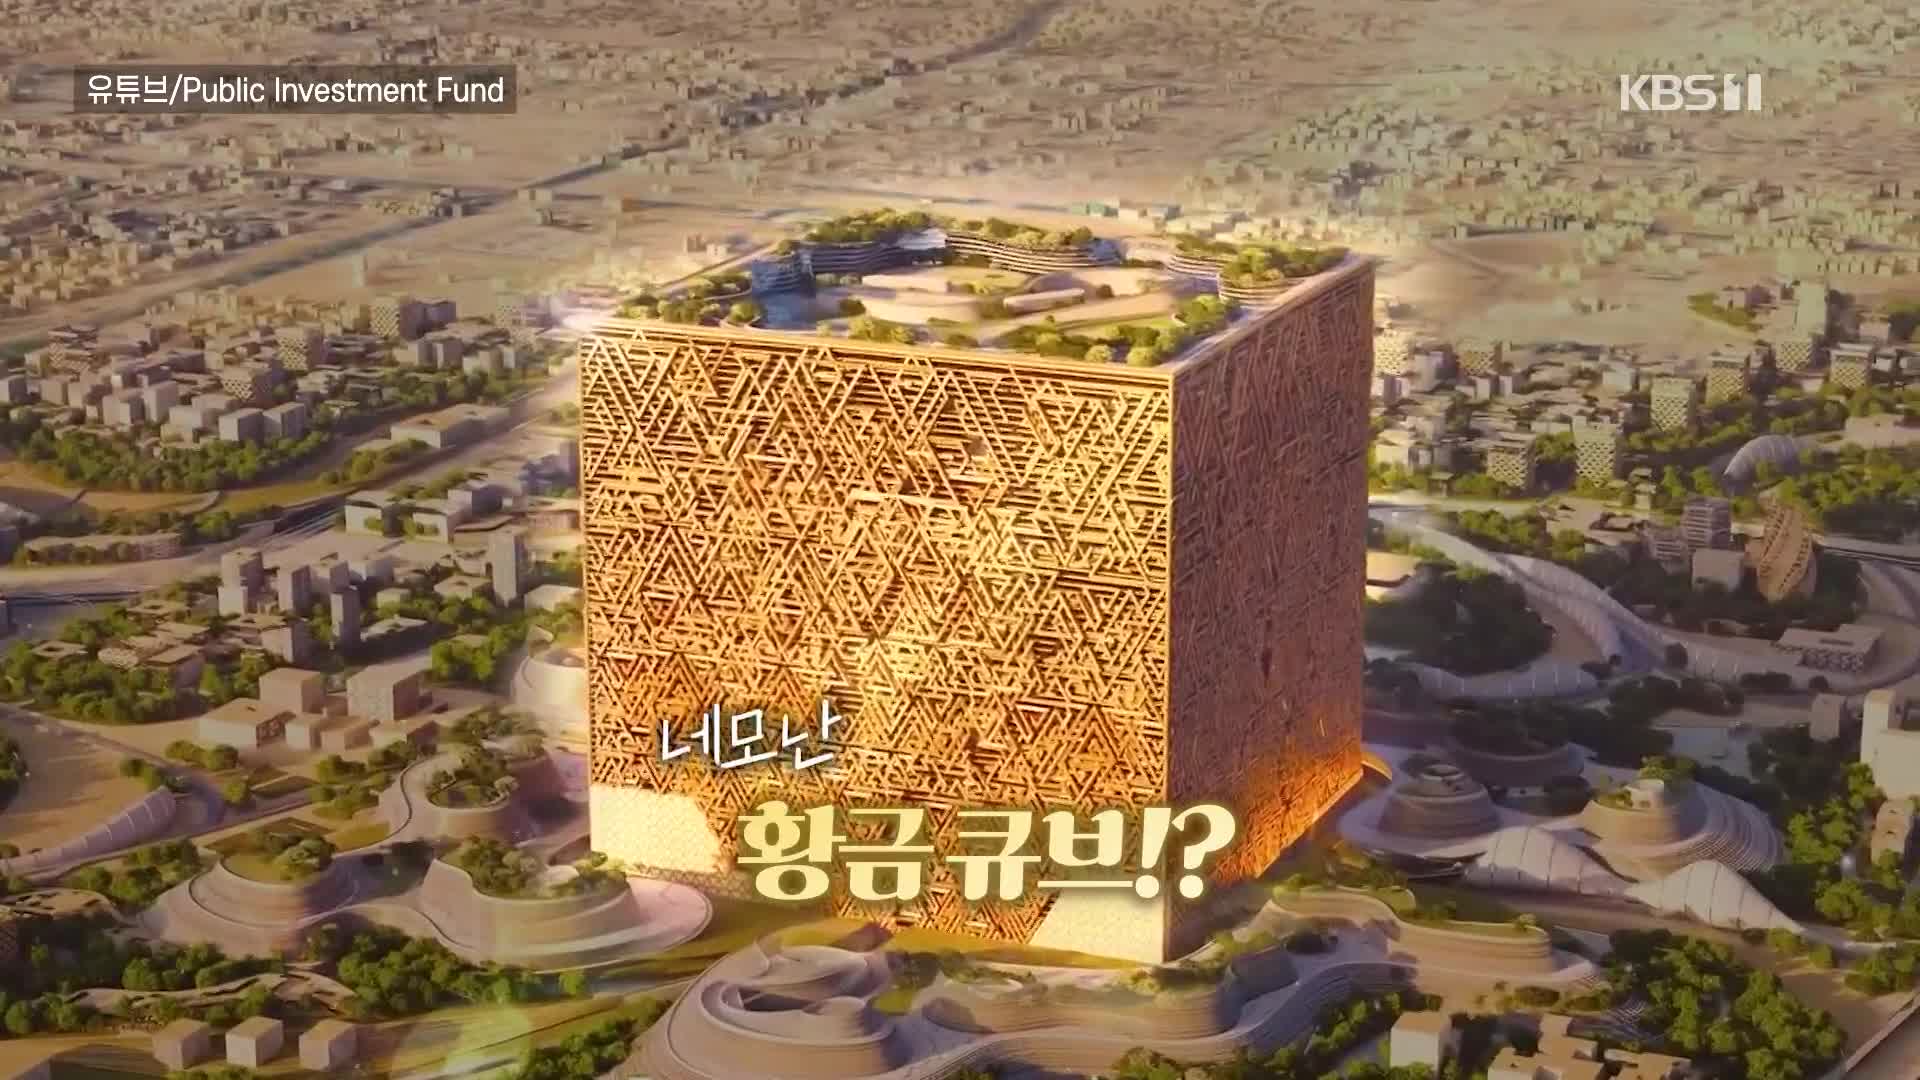 [오늘의 영상] 사우디아라비아에서 만든다는 큐브 모양 건물